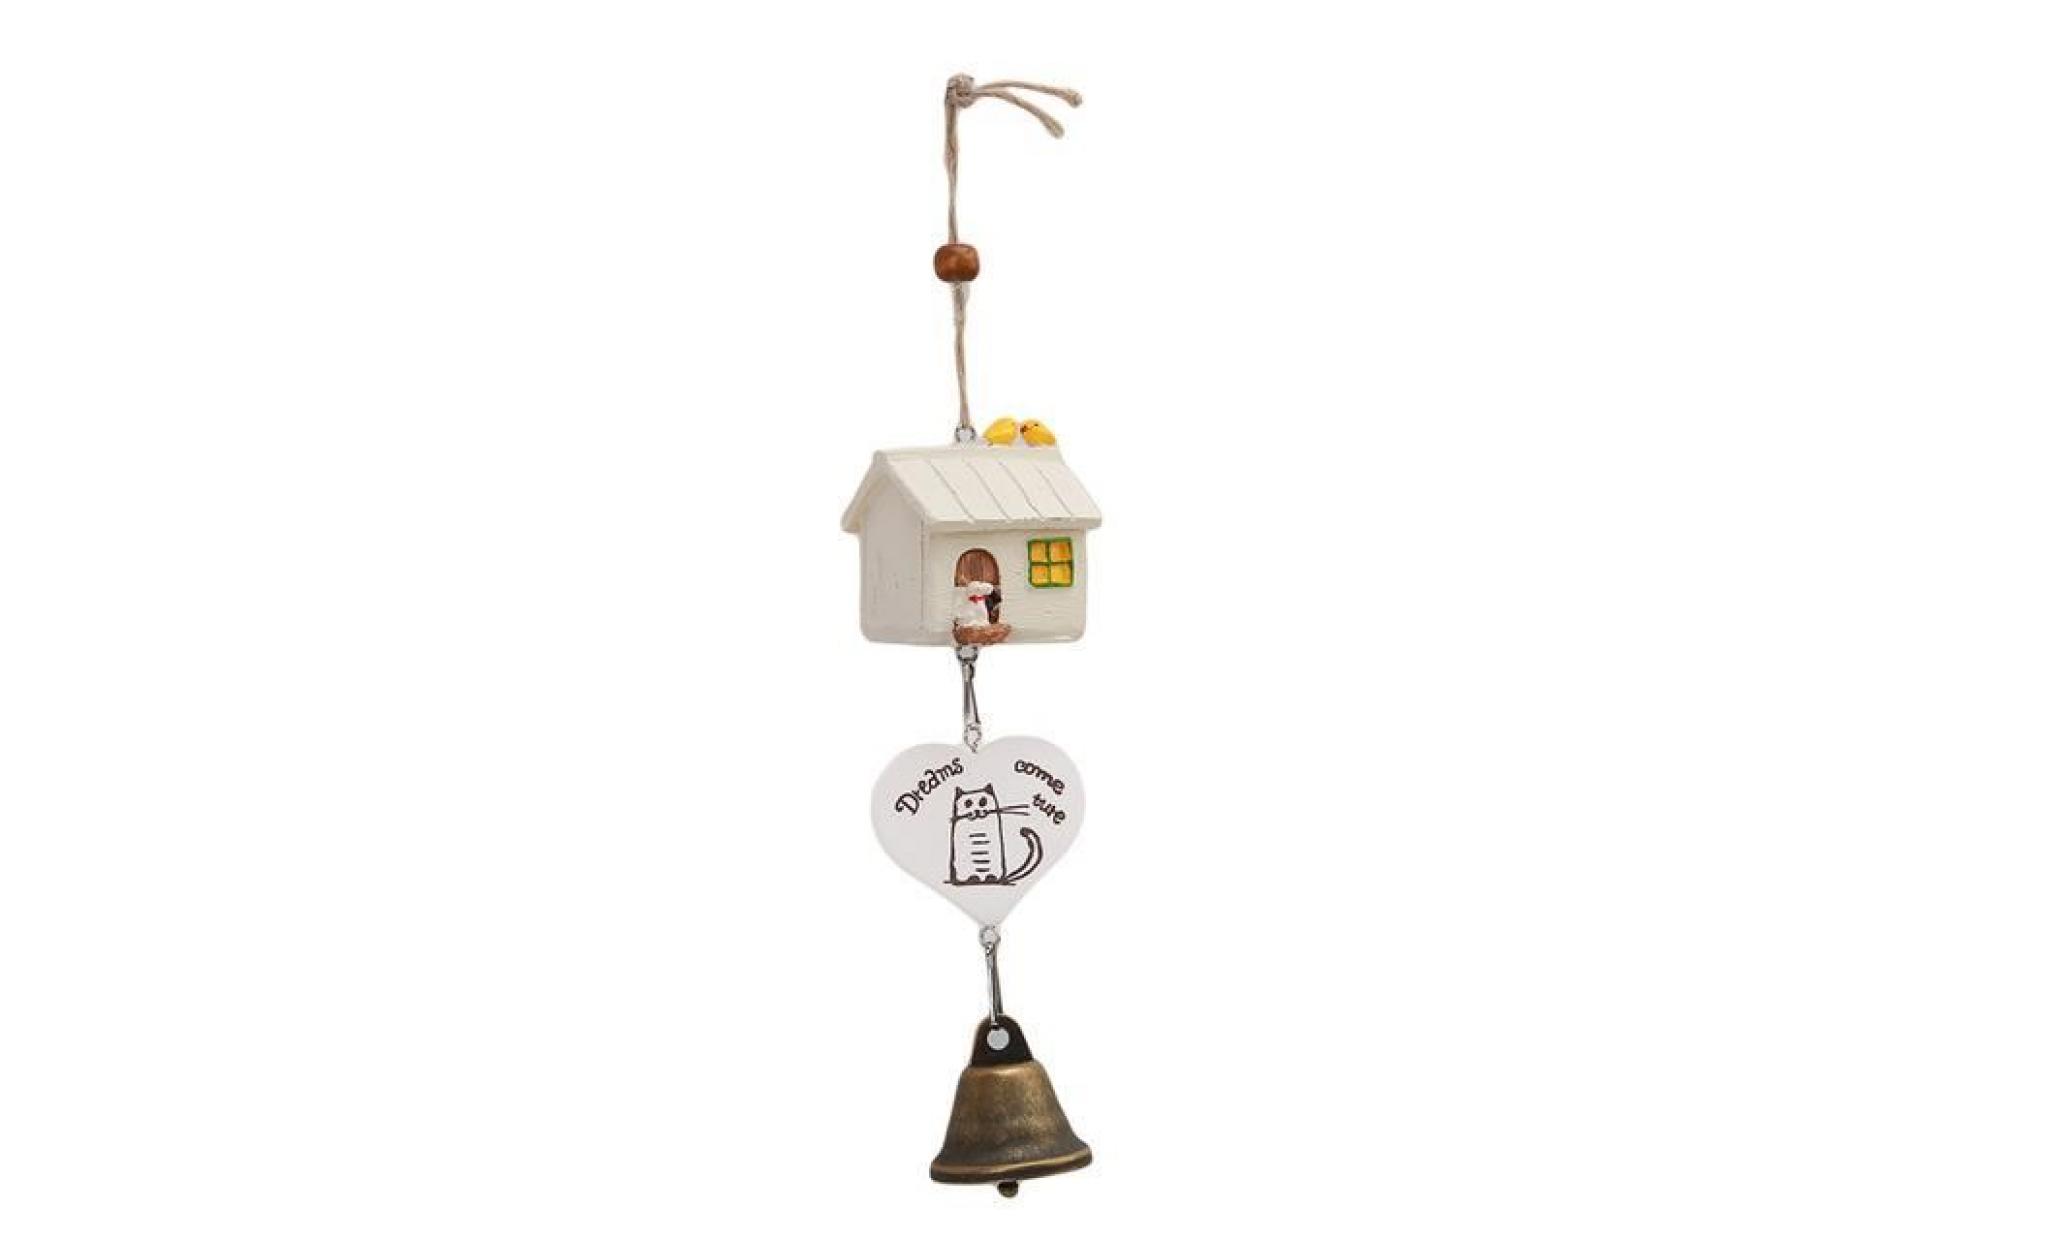 carillons À vents cadeau pastoral suspendus décoration maison ornements oiseau